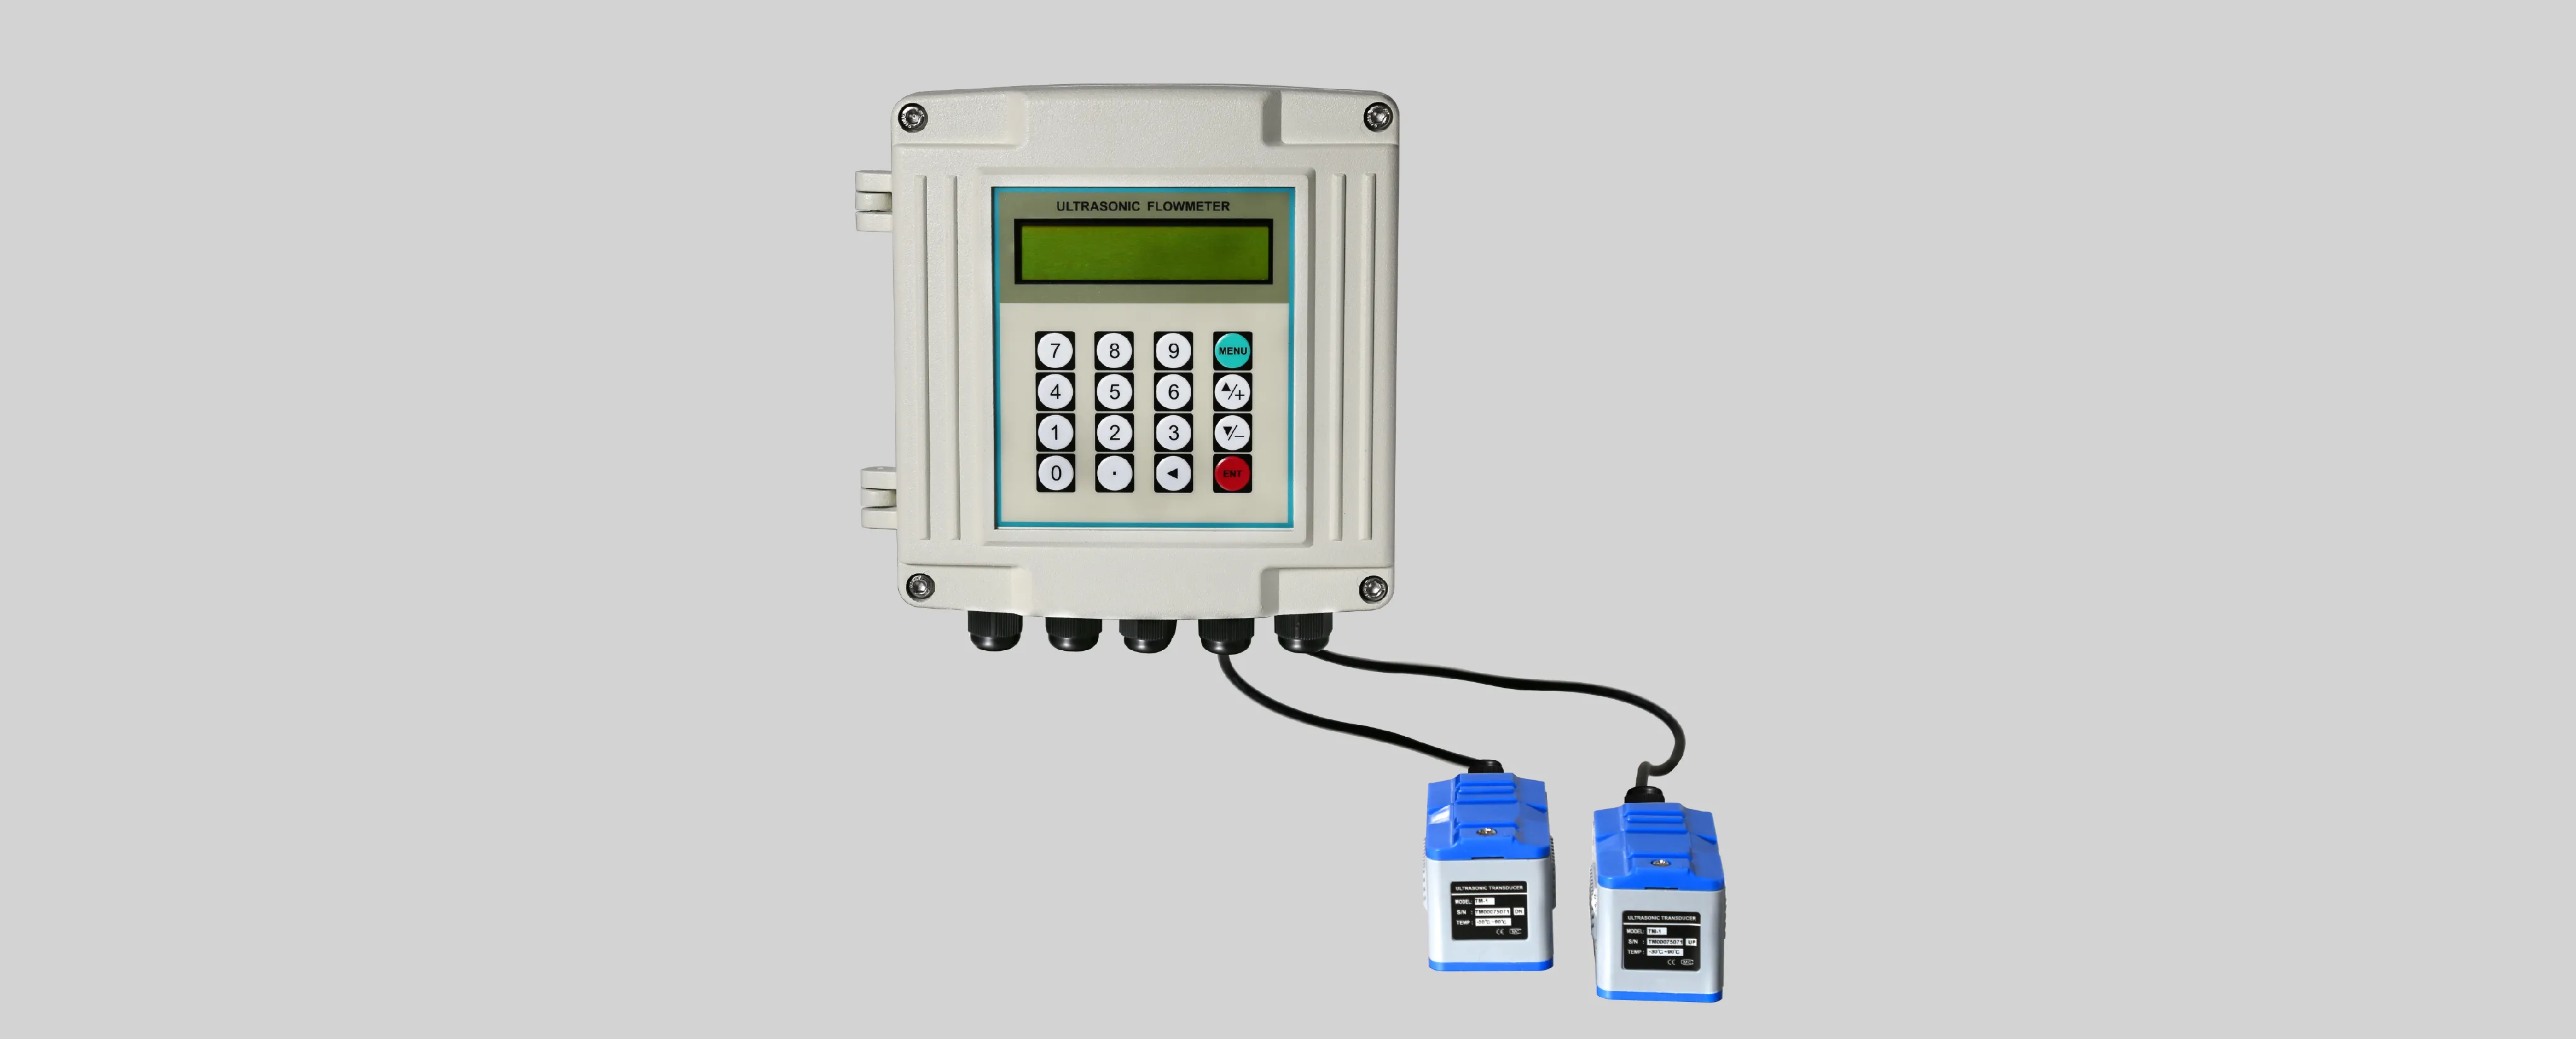 ultrasonic flowmeter